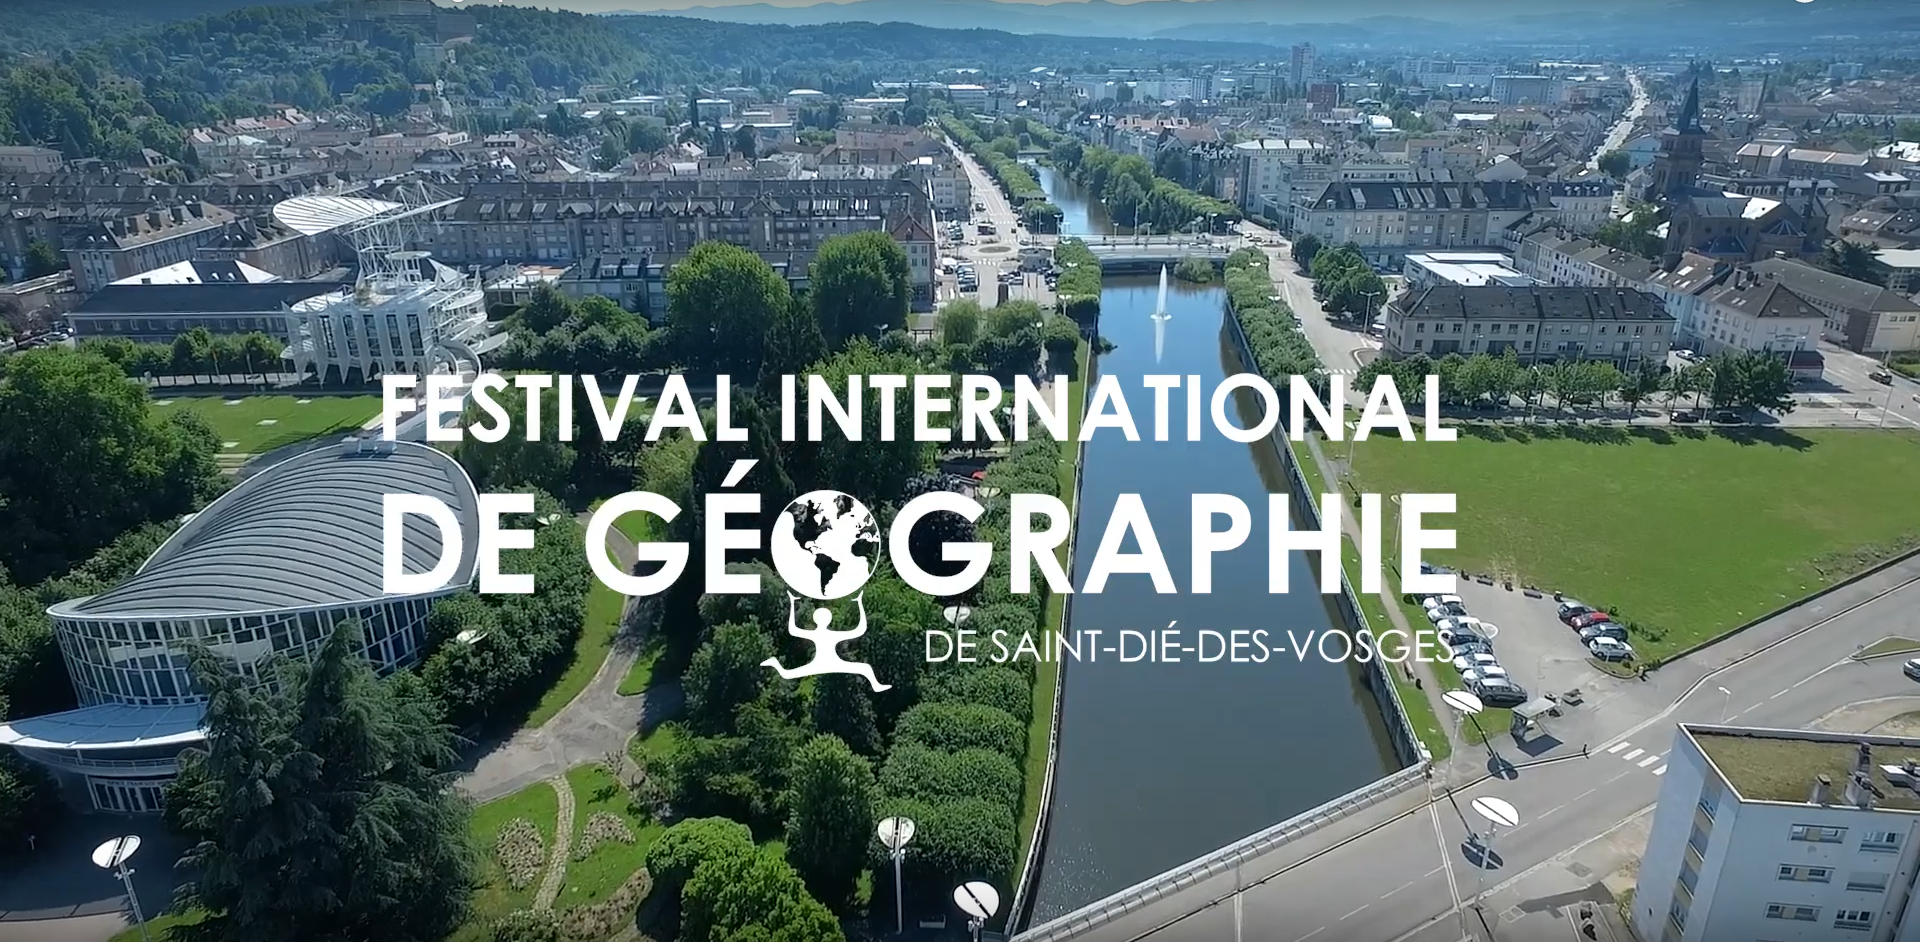 Le festival international de géographie